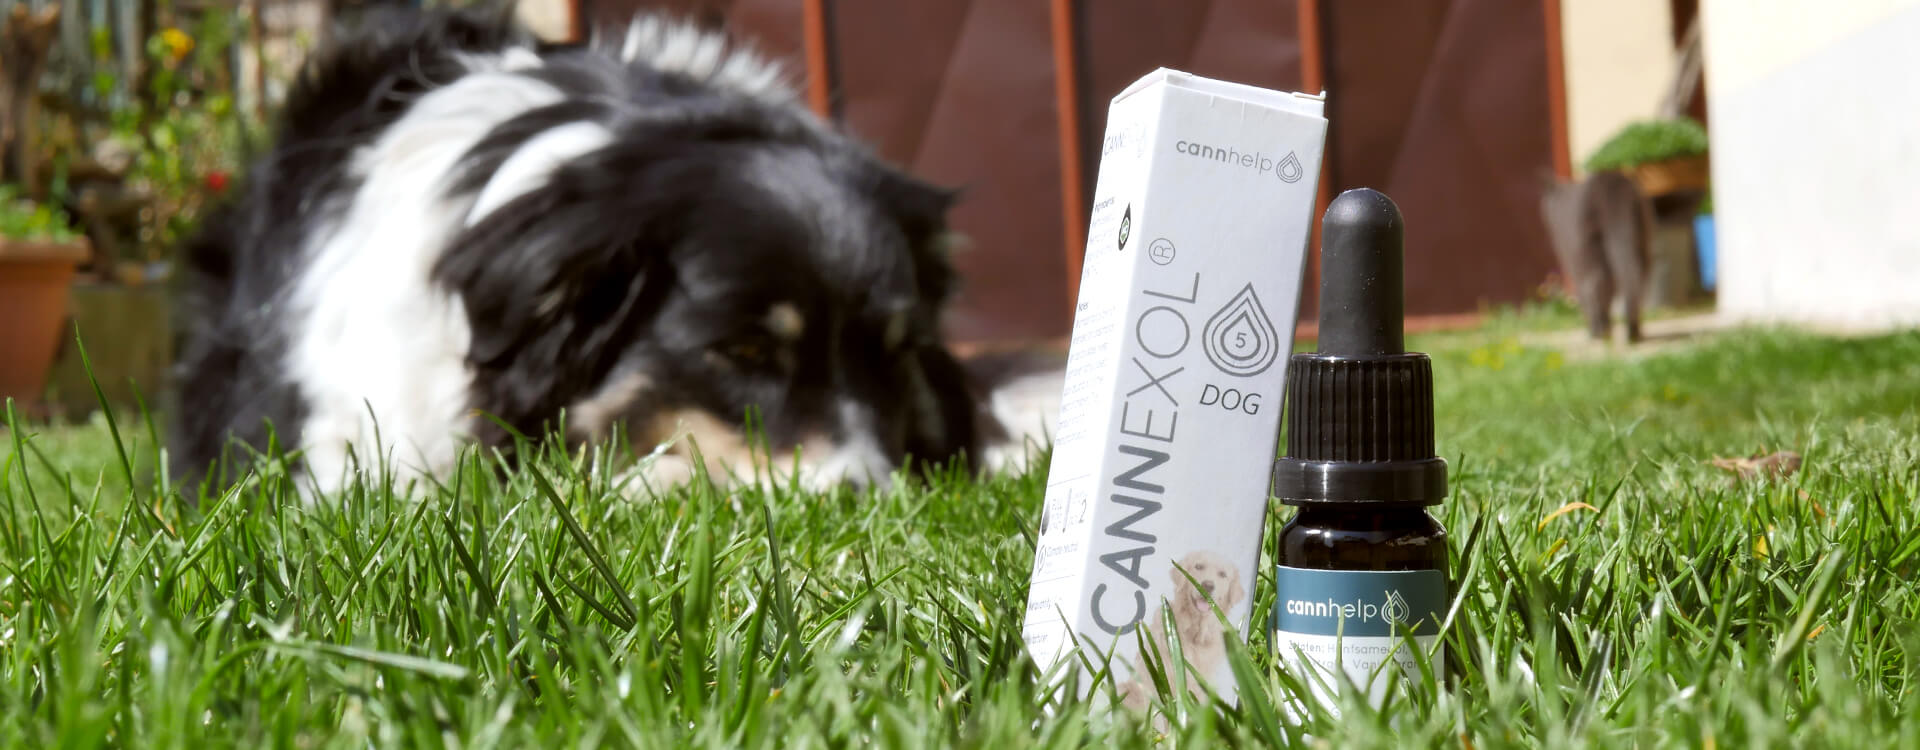 CBD olej Cannexol pre zvieratá položený v tráve, v pozadí spí pes